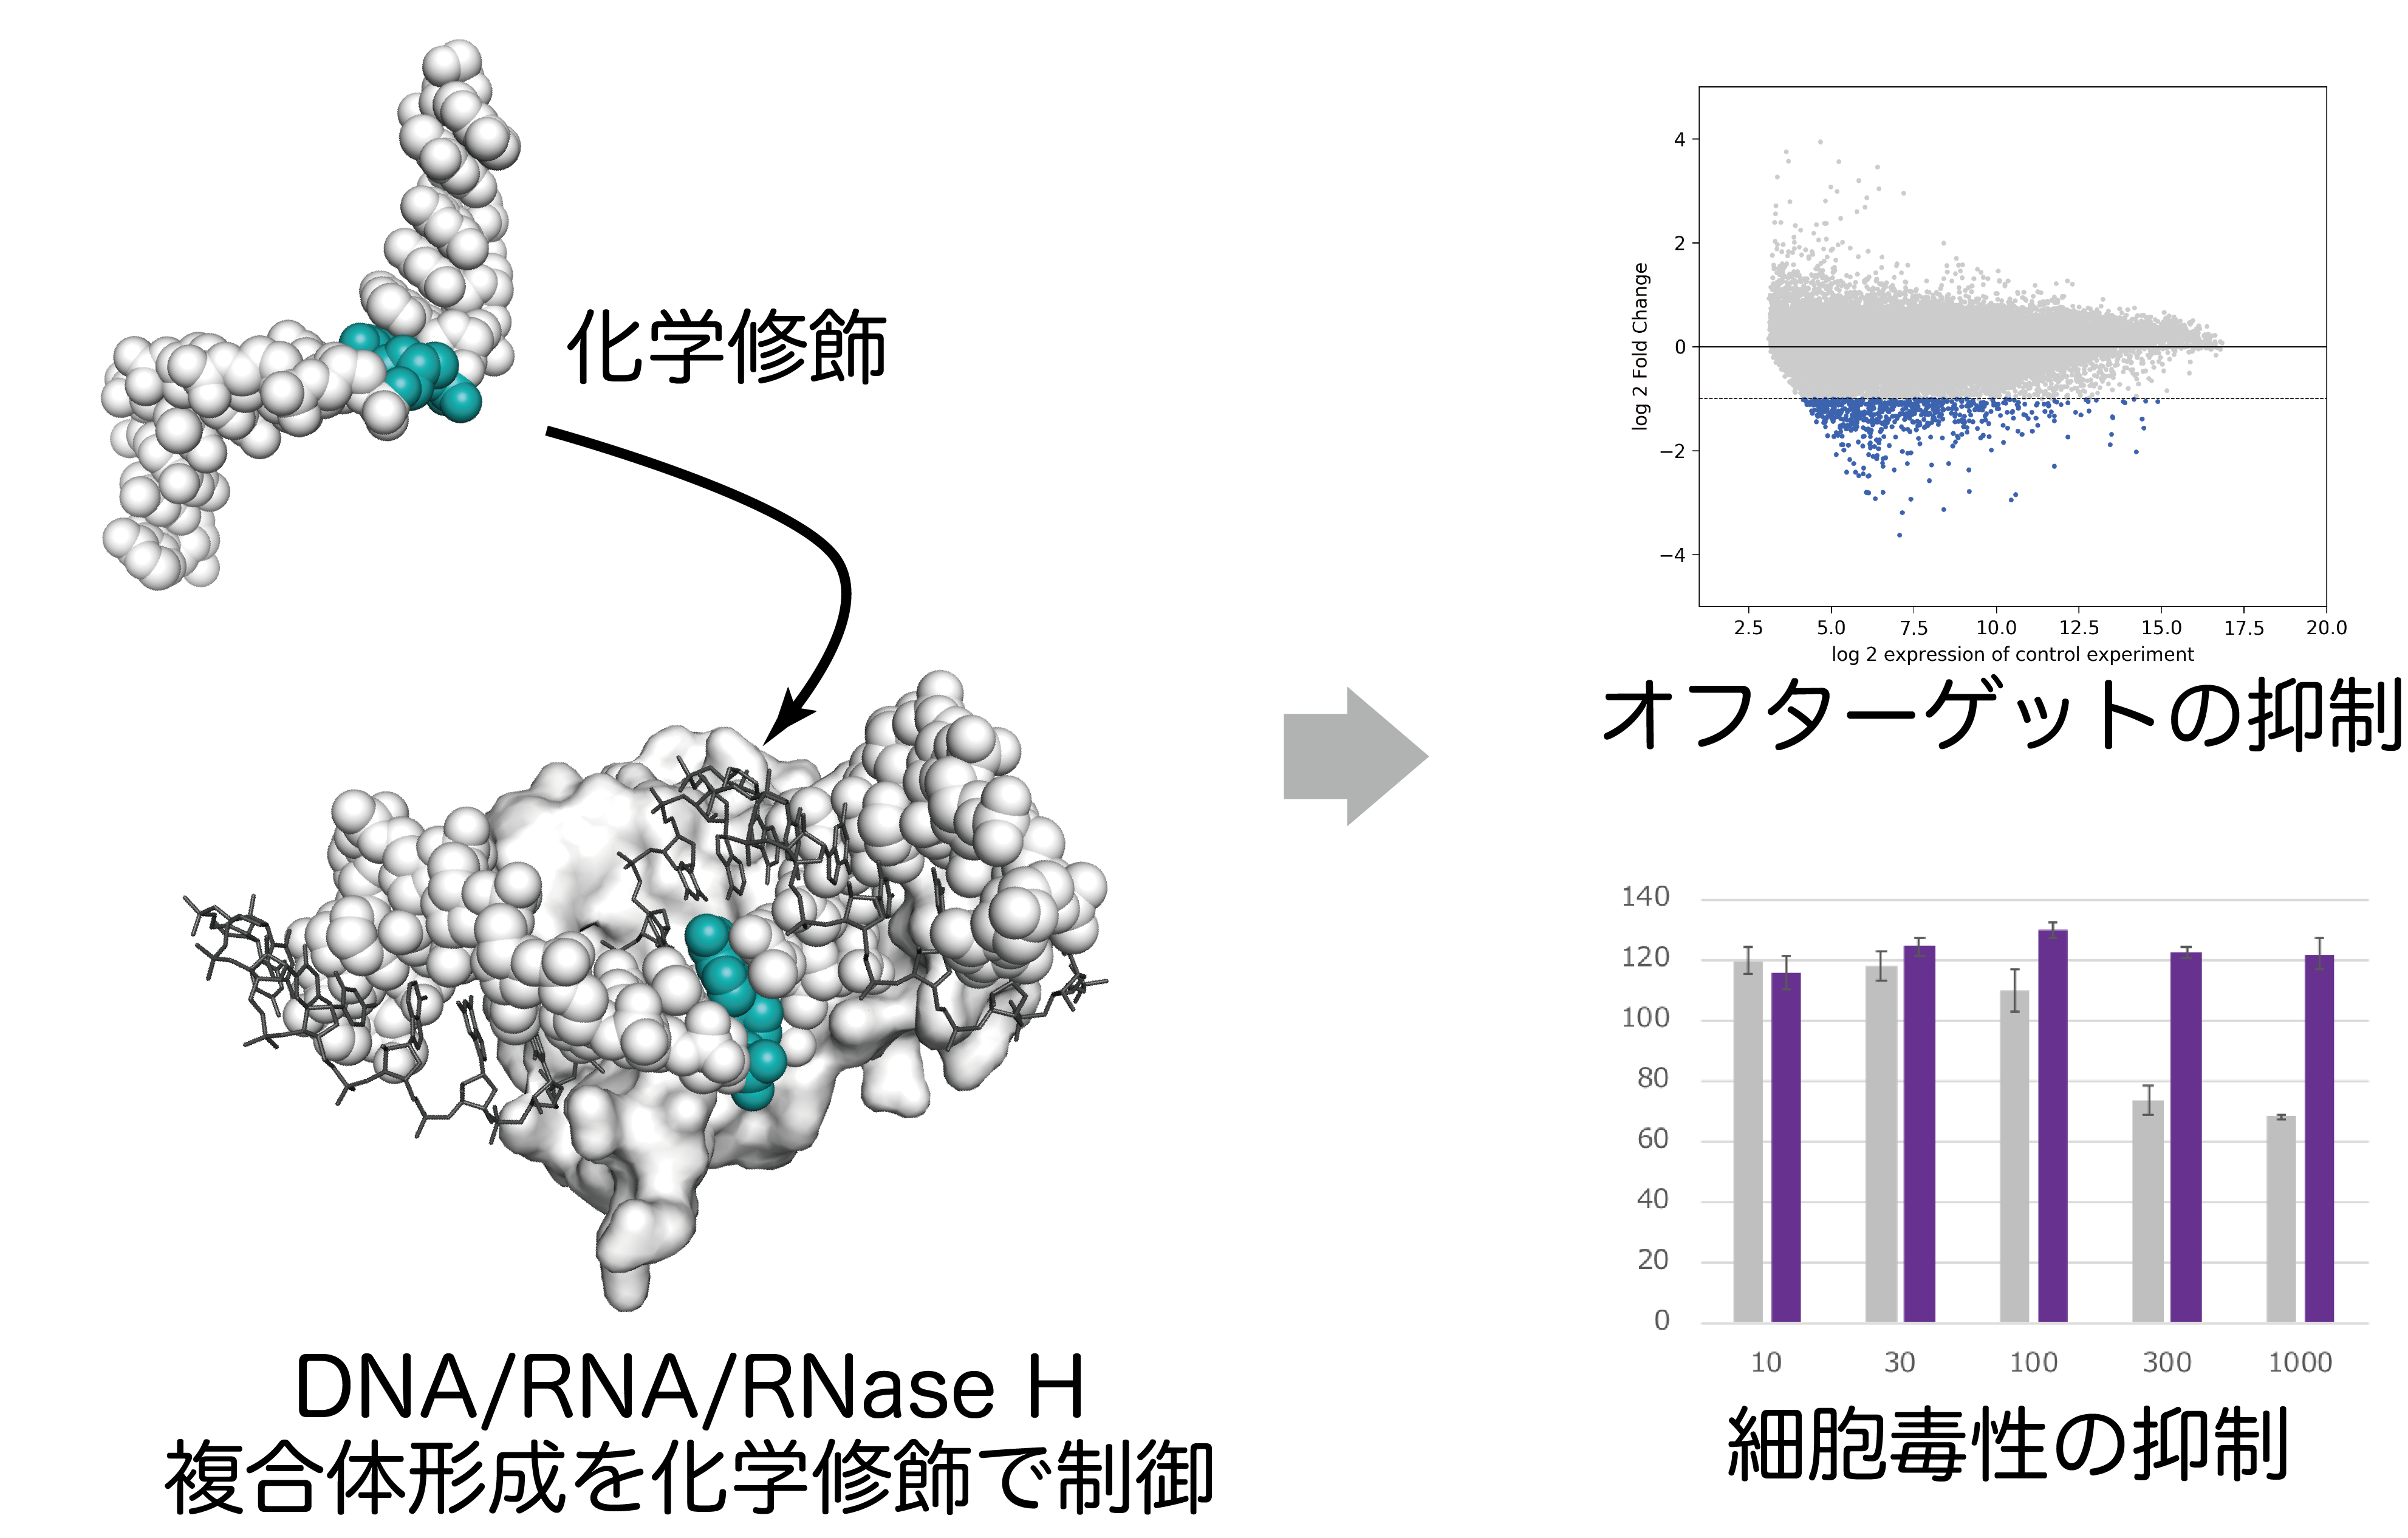 RNase H依存アンチセンス核酸のオフターゲット効果の抑制にむけ、メカニズムに基づく化学修飾を開発し、オフターゲット効果や細胞毒性の抑制に成功した。